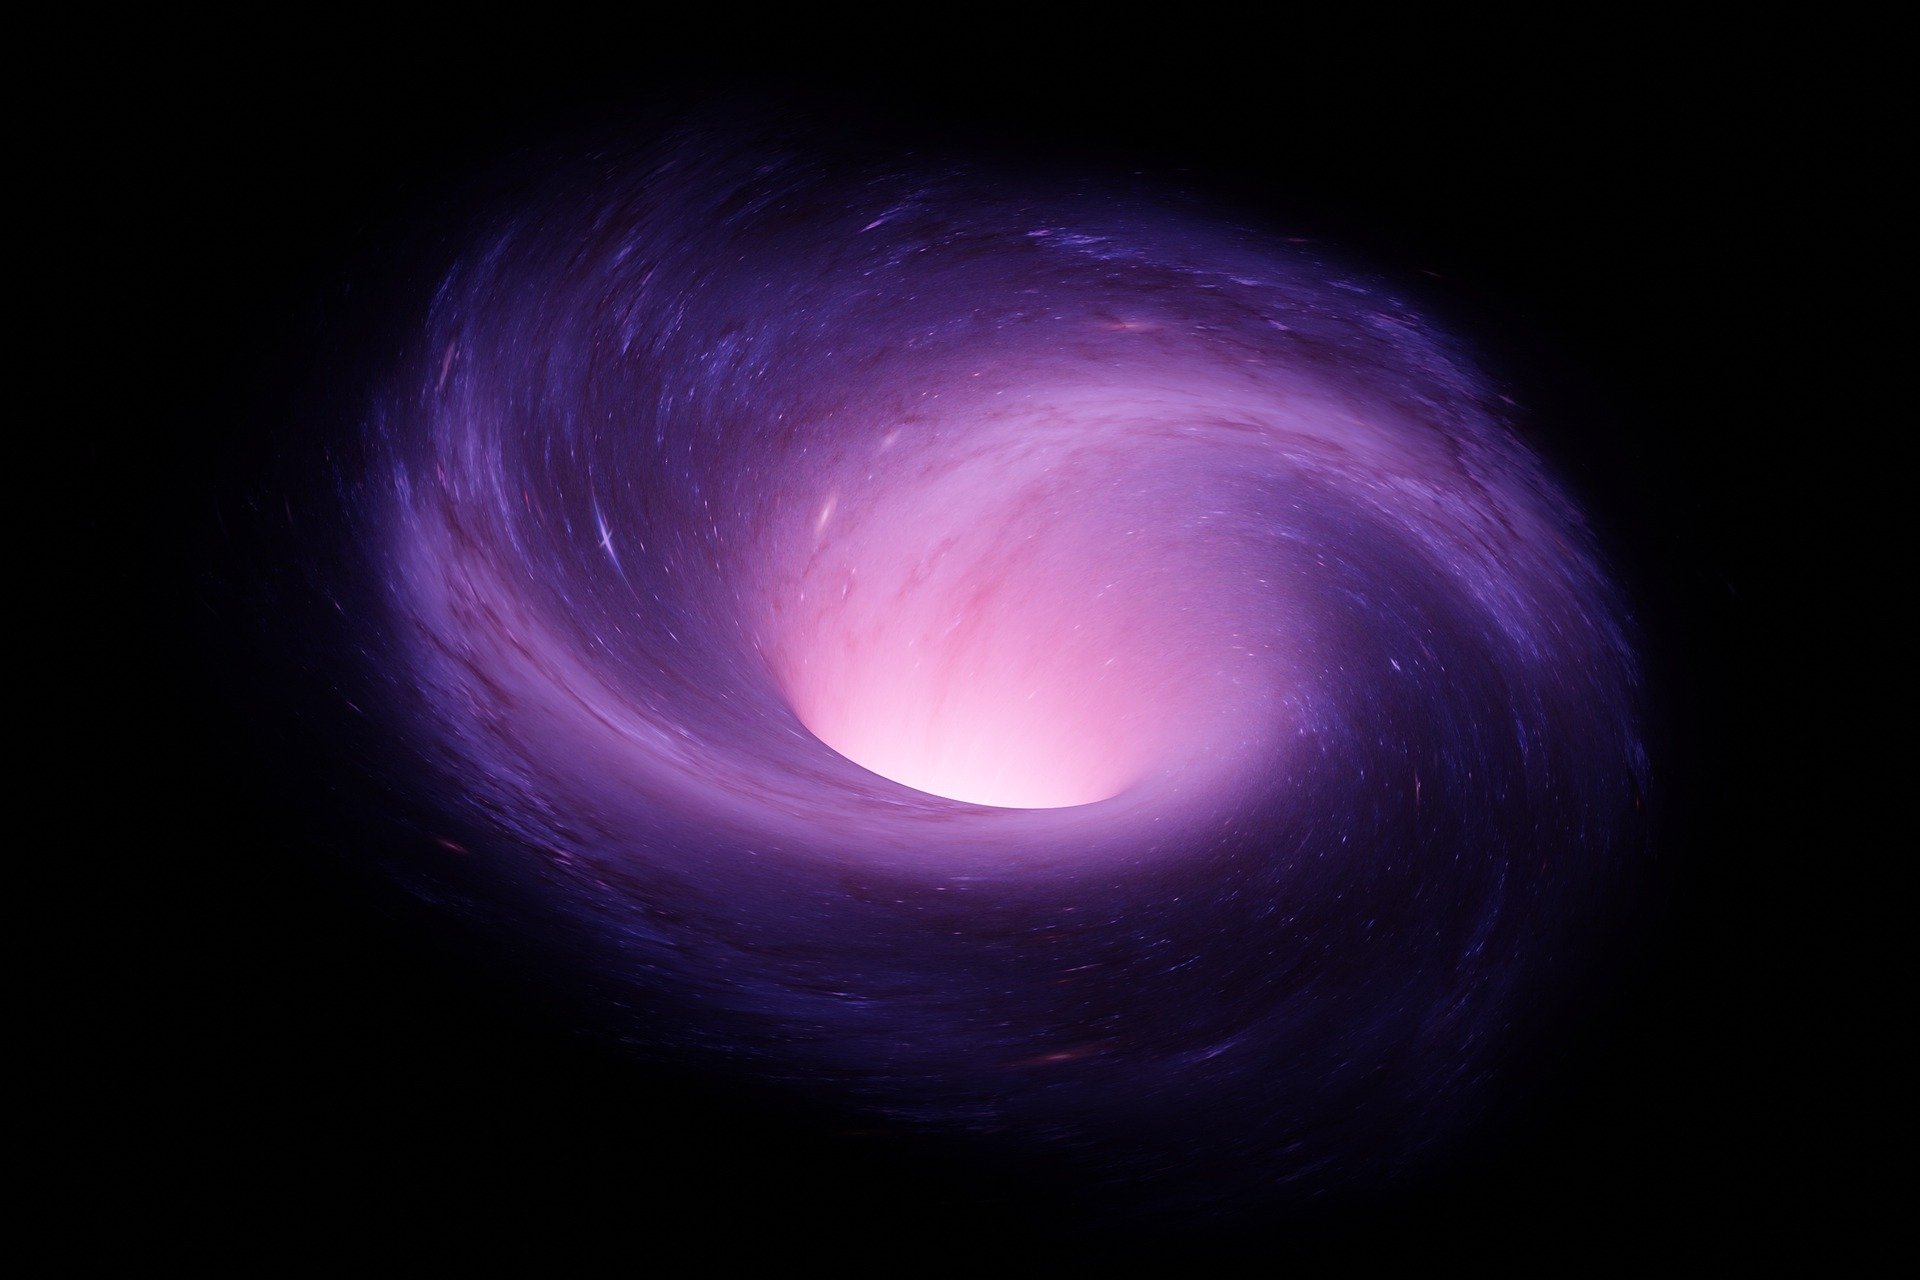 Fenomen extraordinar lângă Soare. A fost descoperită o gaură neagră